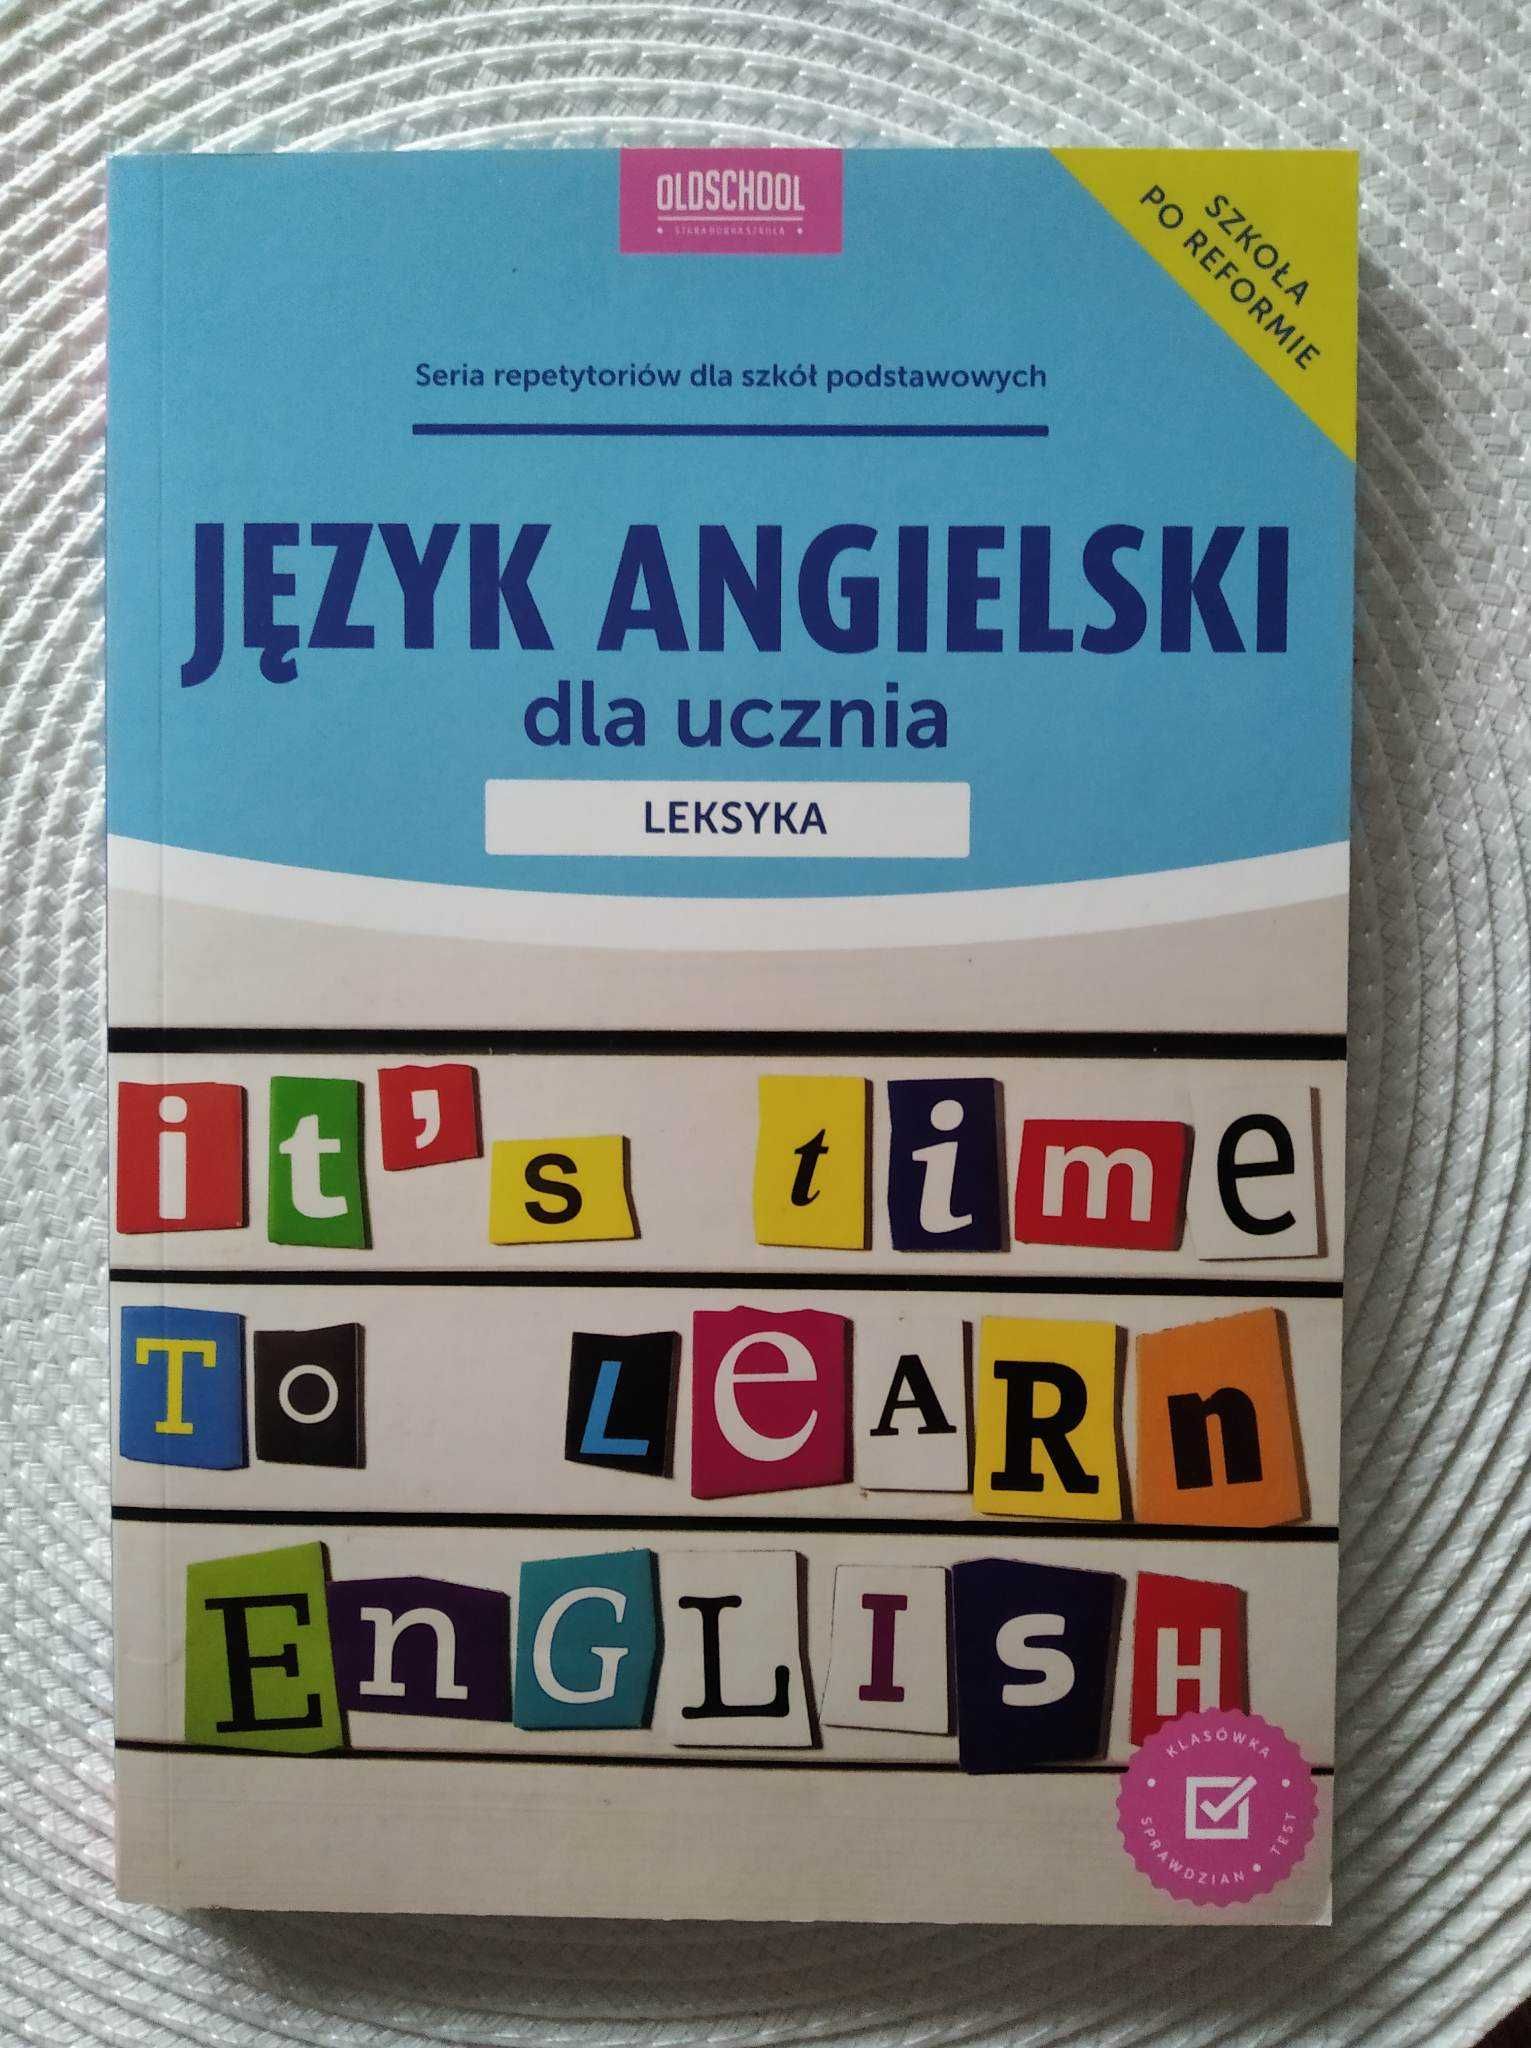 Sprzedam " Język angielski dla ucznia"- leksyka- repetytorium